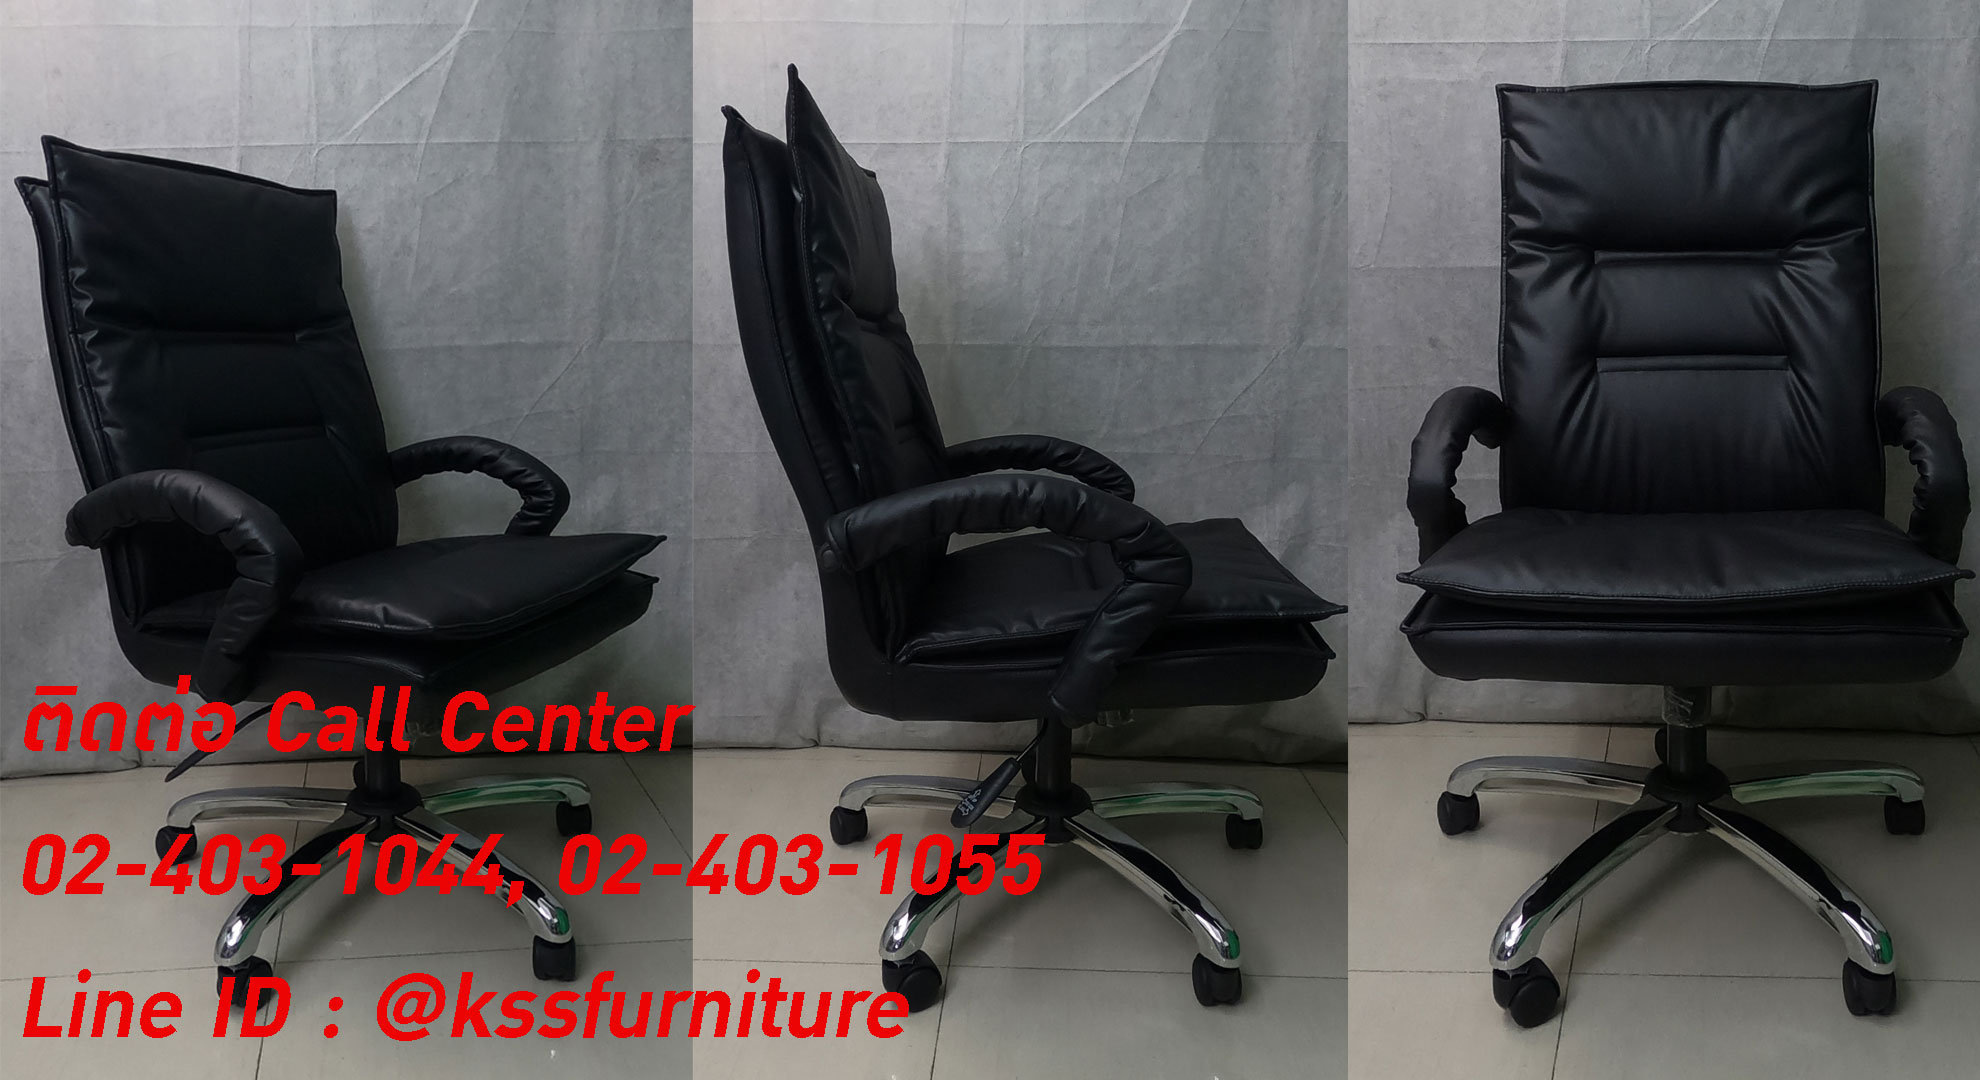 64086::SK-018M/C(ขาชุบ)::เก้าอี้สำนักงานพนักพิงกลาง SK-018M/C(ขาชุบ) แบบก้อนโยก ขนาด W63 x D70 x H100 cm. หนังPVCเลือกสีได้ ปรับสูงต่ำด้วยระบบโช็คแก๊ส (ขาชุบโครเมี่ยม,ขาชุบโครเมี่ยมเหลี่ยม) เก้าอี้สำนักงาน CHAWIN